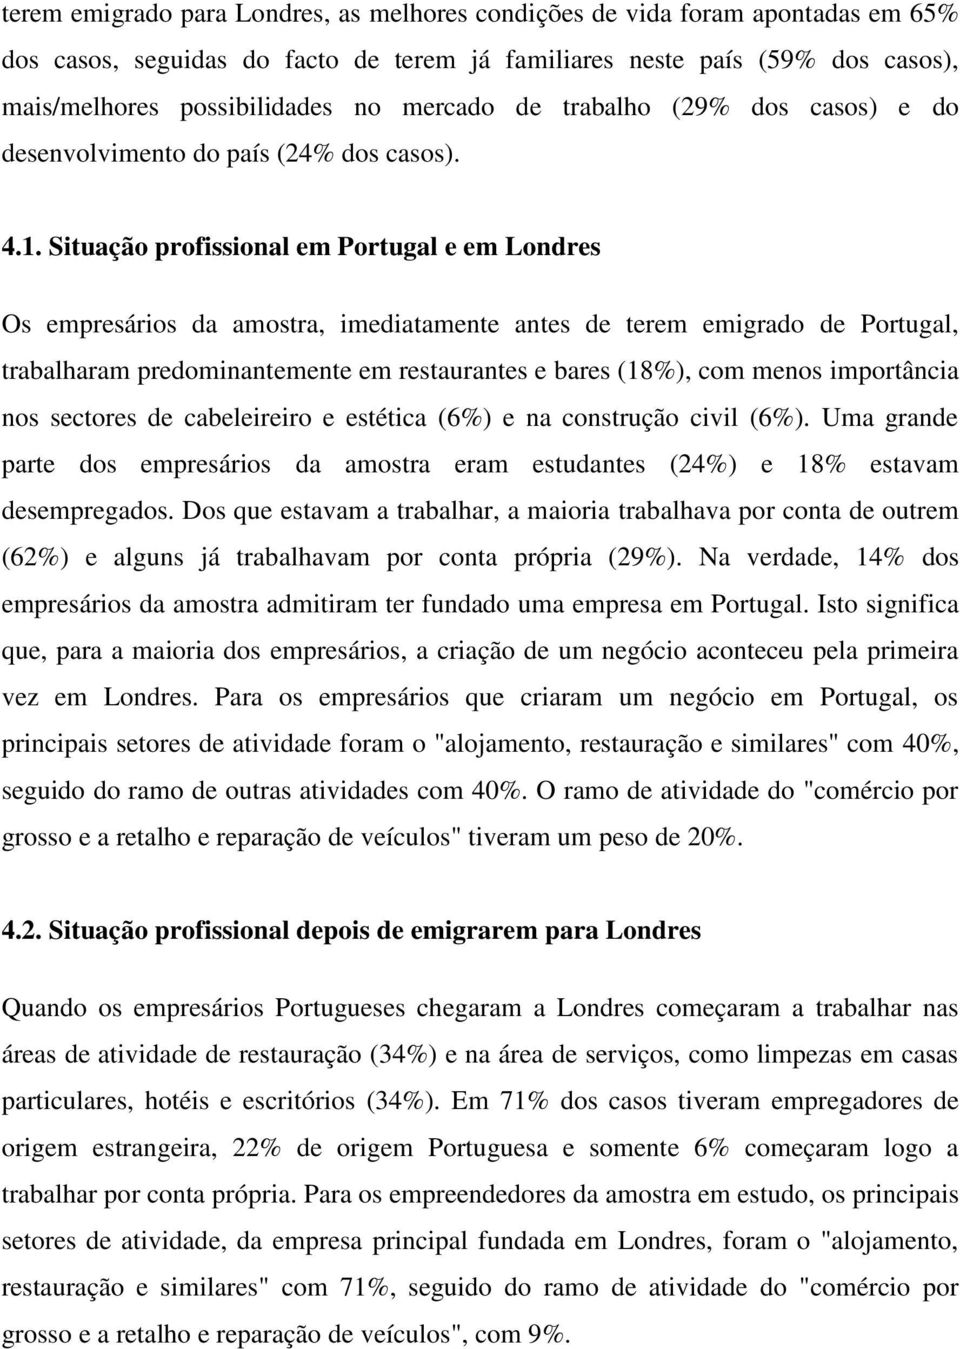 Situação profissional em Portugal e em Londres Os empresários da amostra, imediatamente antes de terem emigrado de Portugal, trabalharam predominantemente em restaurantes e bares (18%), com menos